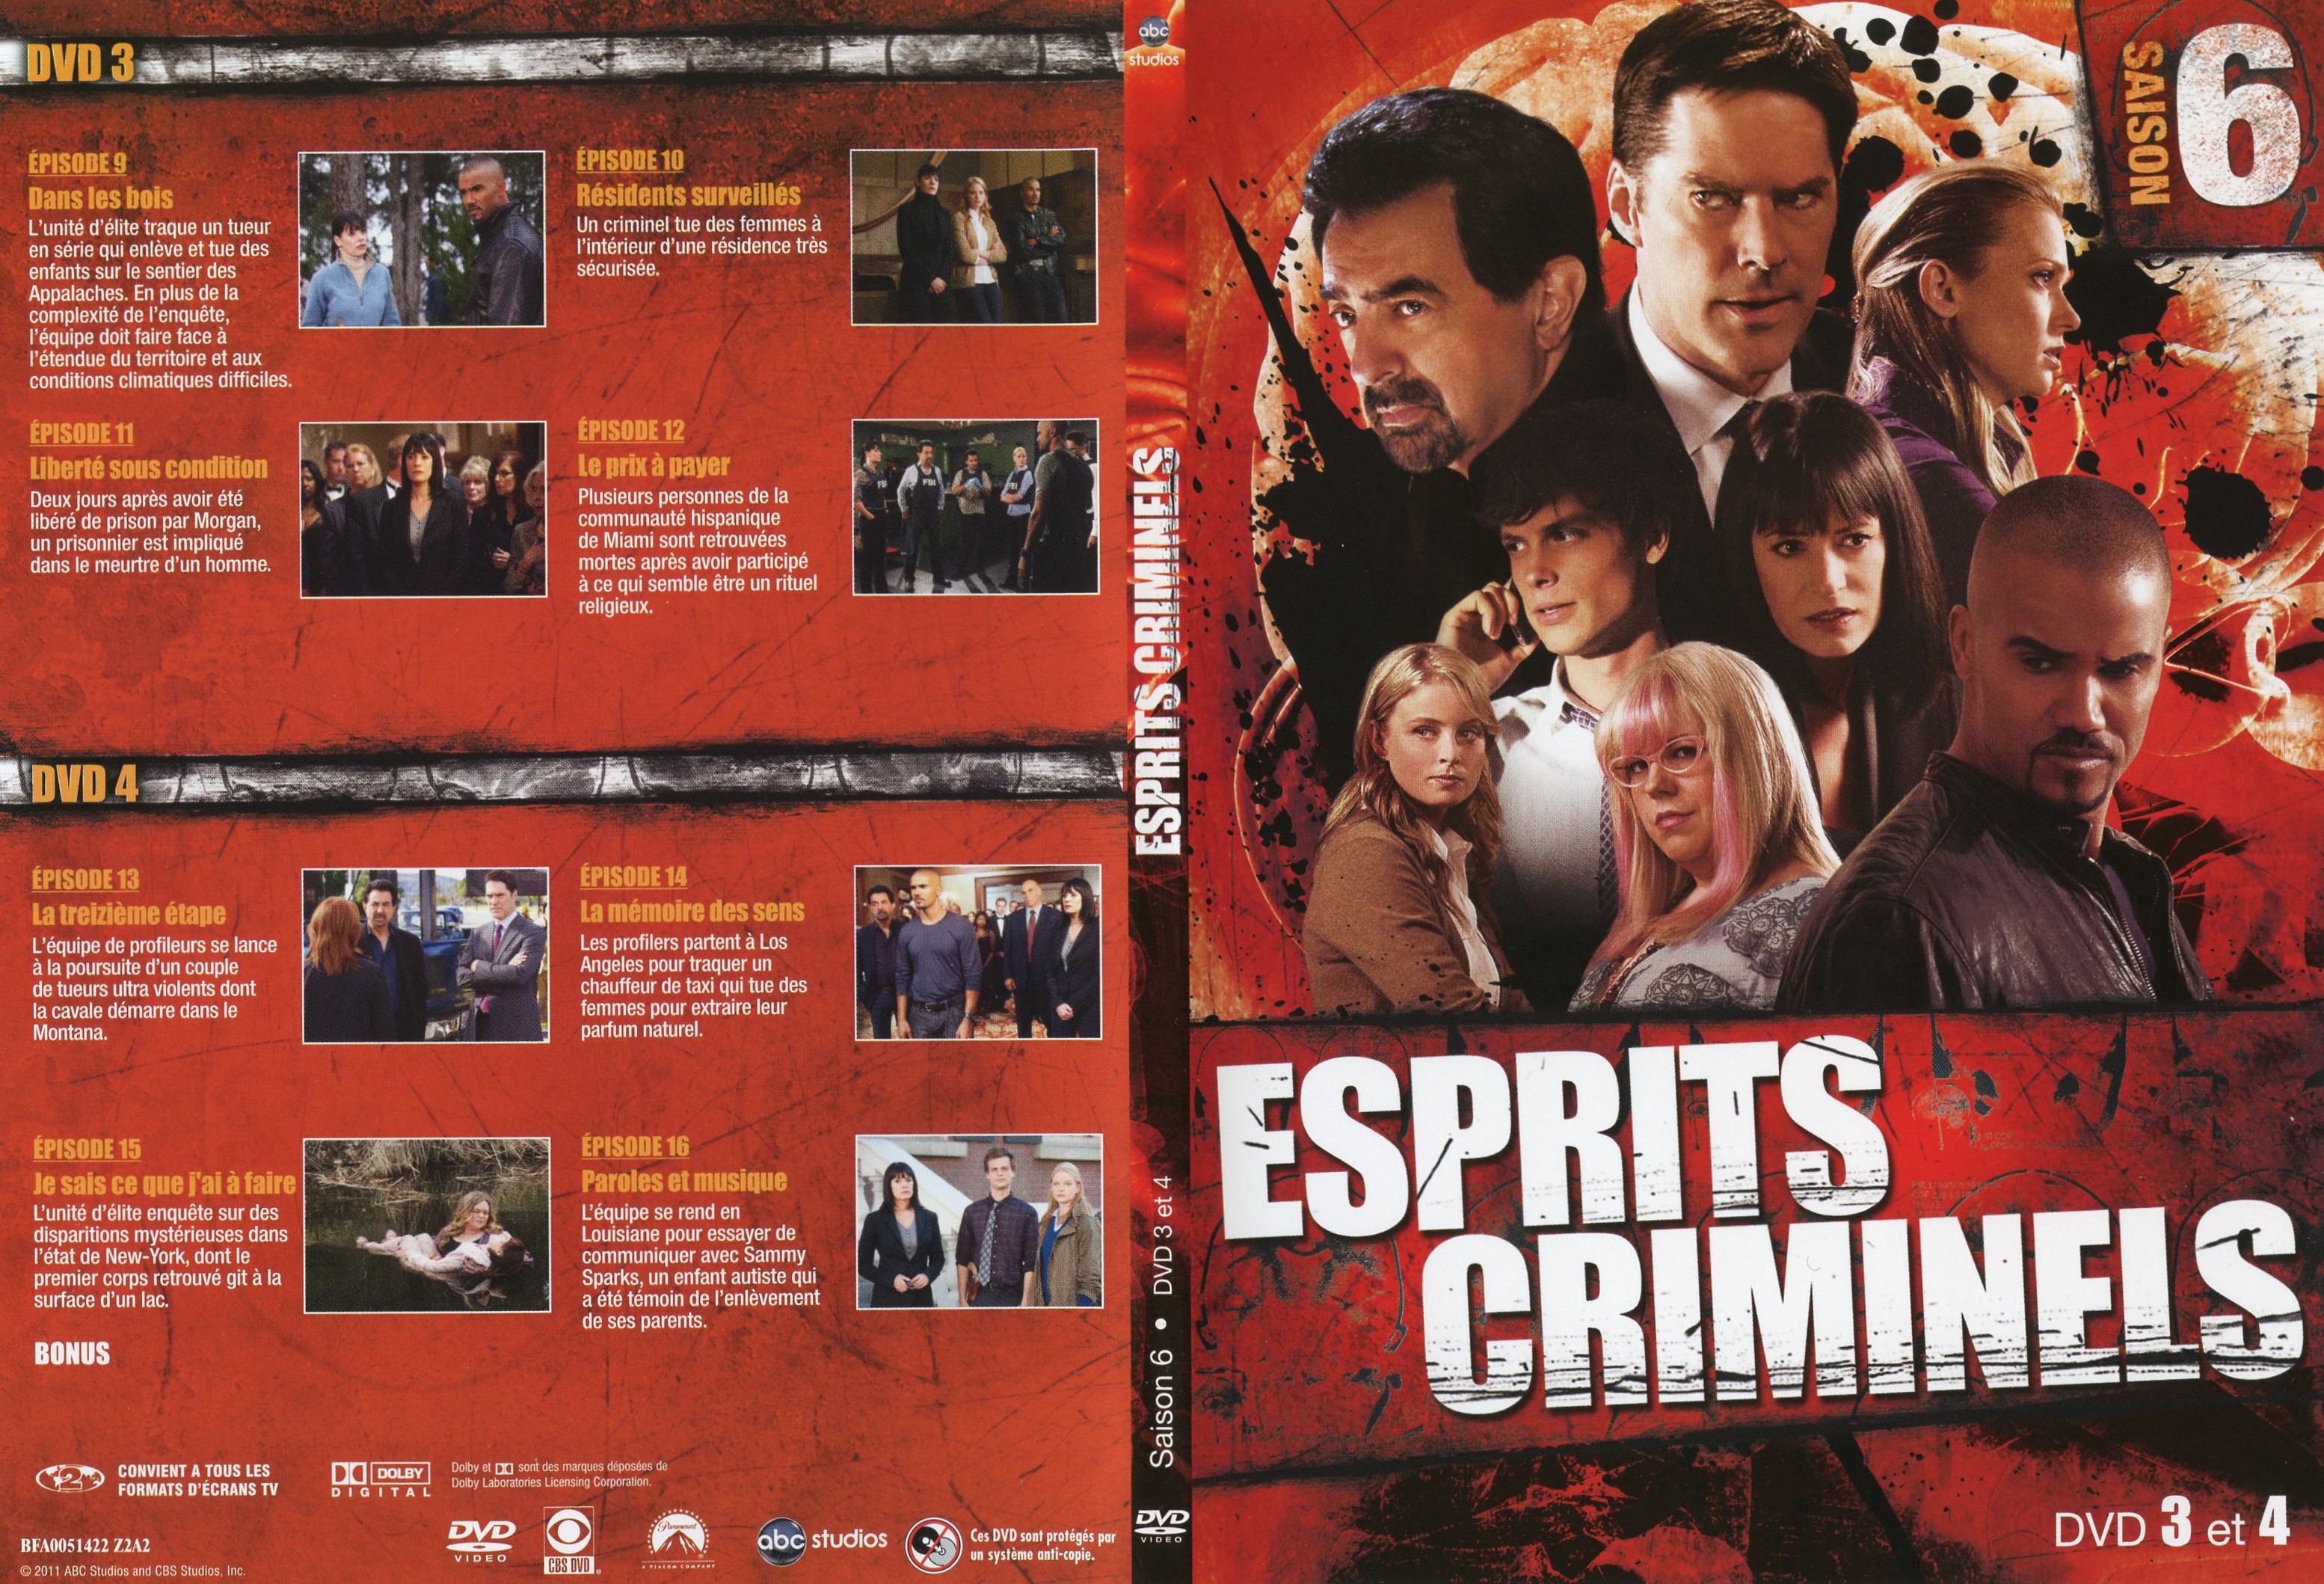 Jaquette DVD Esprits criminels Saison 6 DVD 2